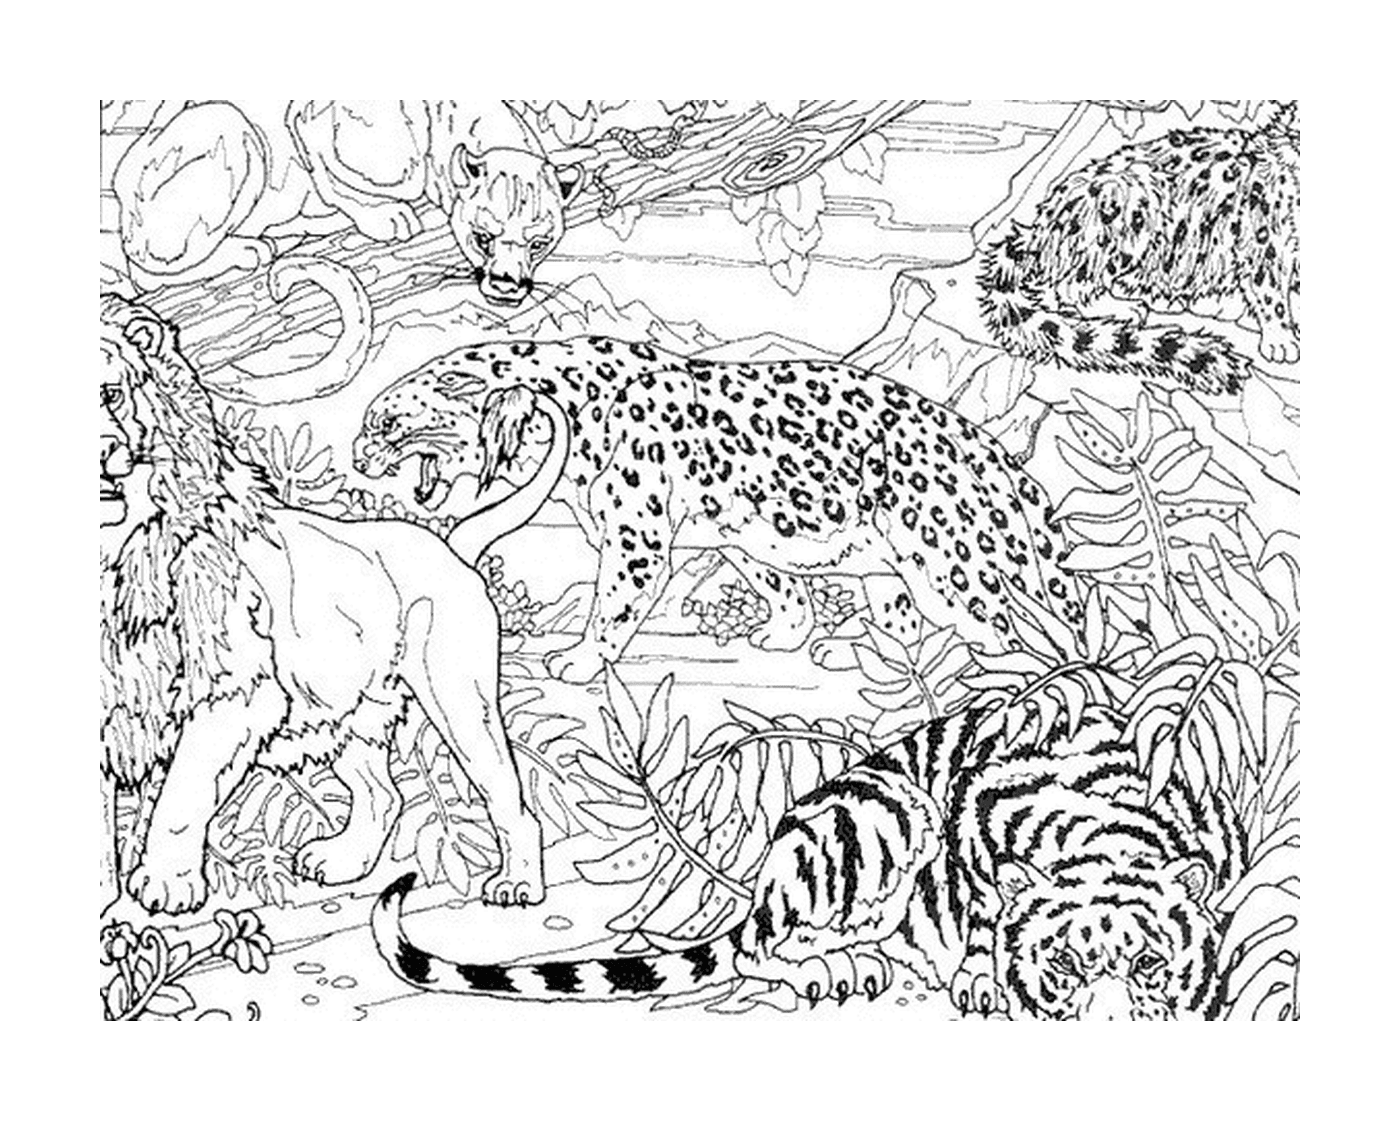  Un leopardo e due tigri nella giungla 